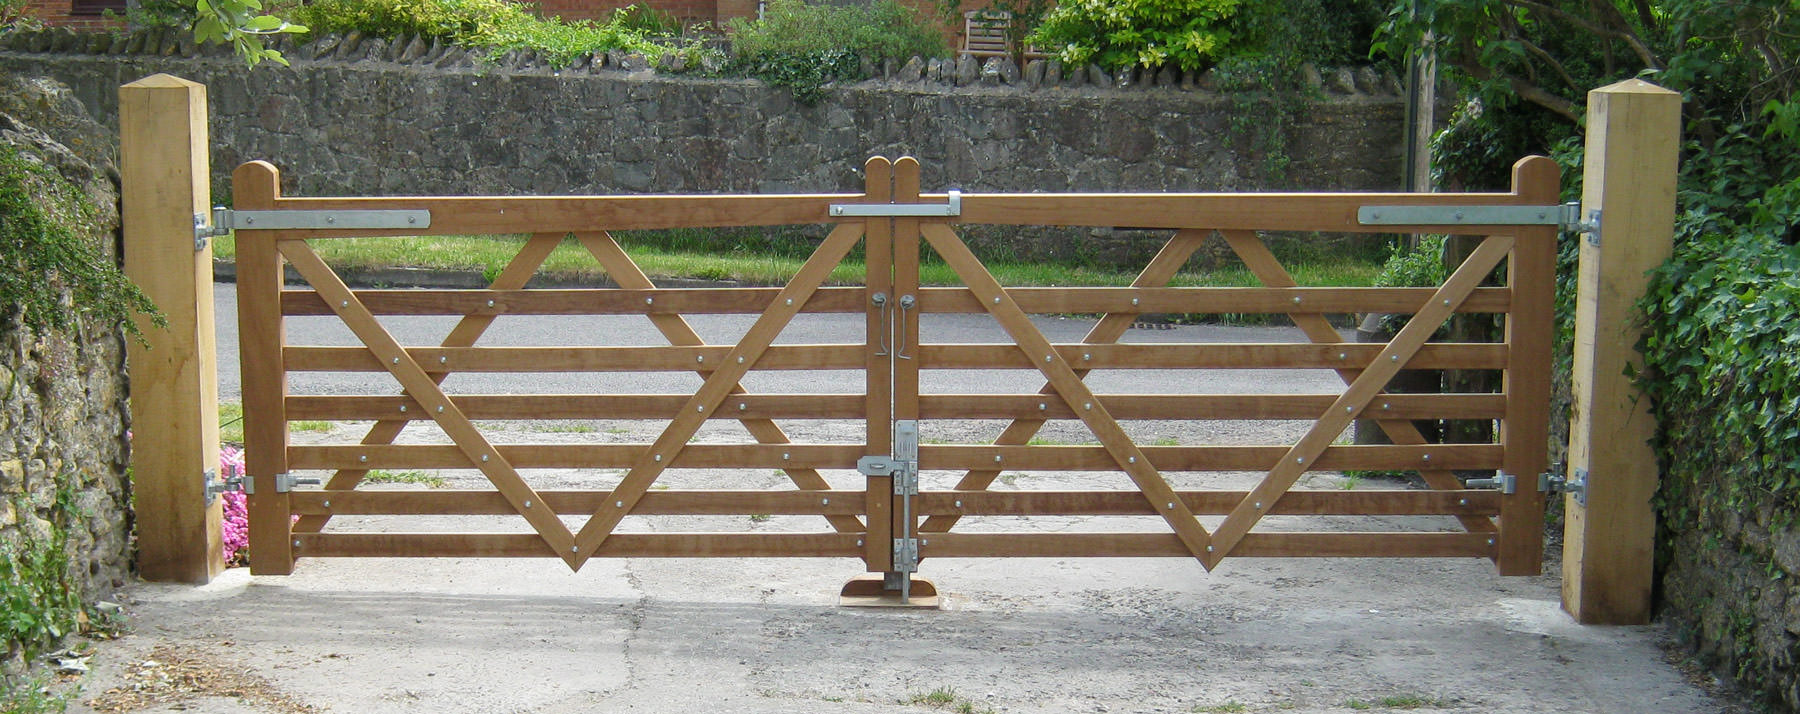 Dorset gates